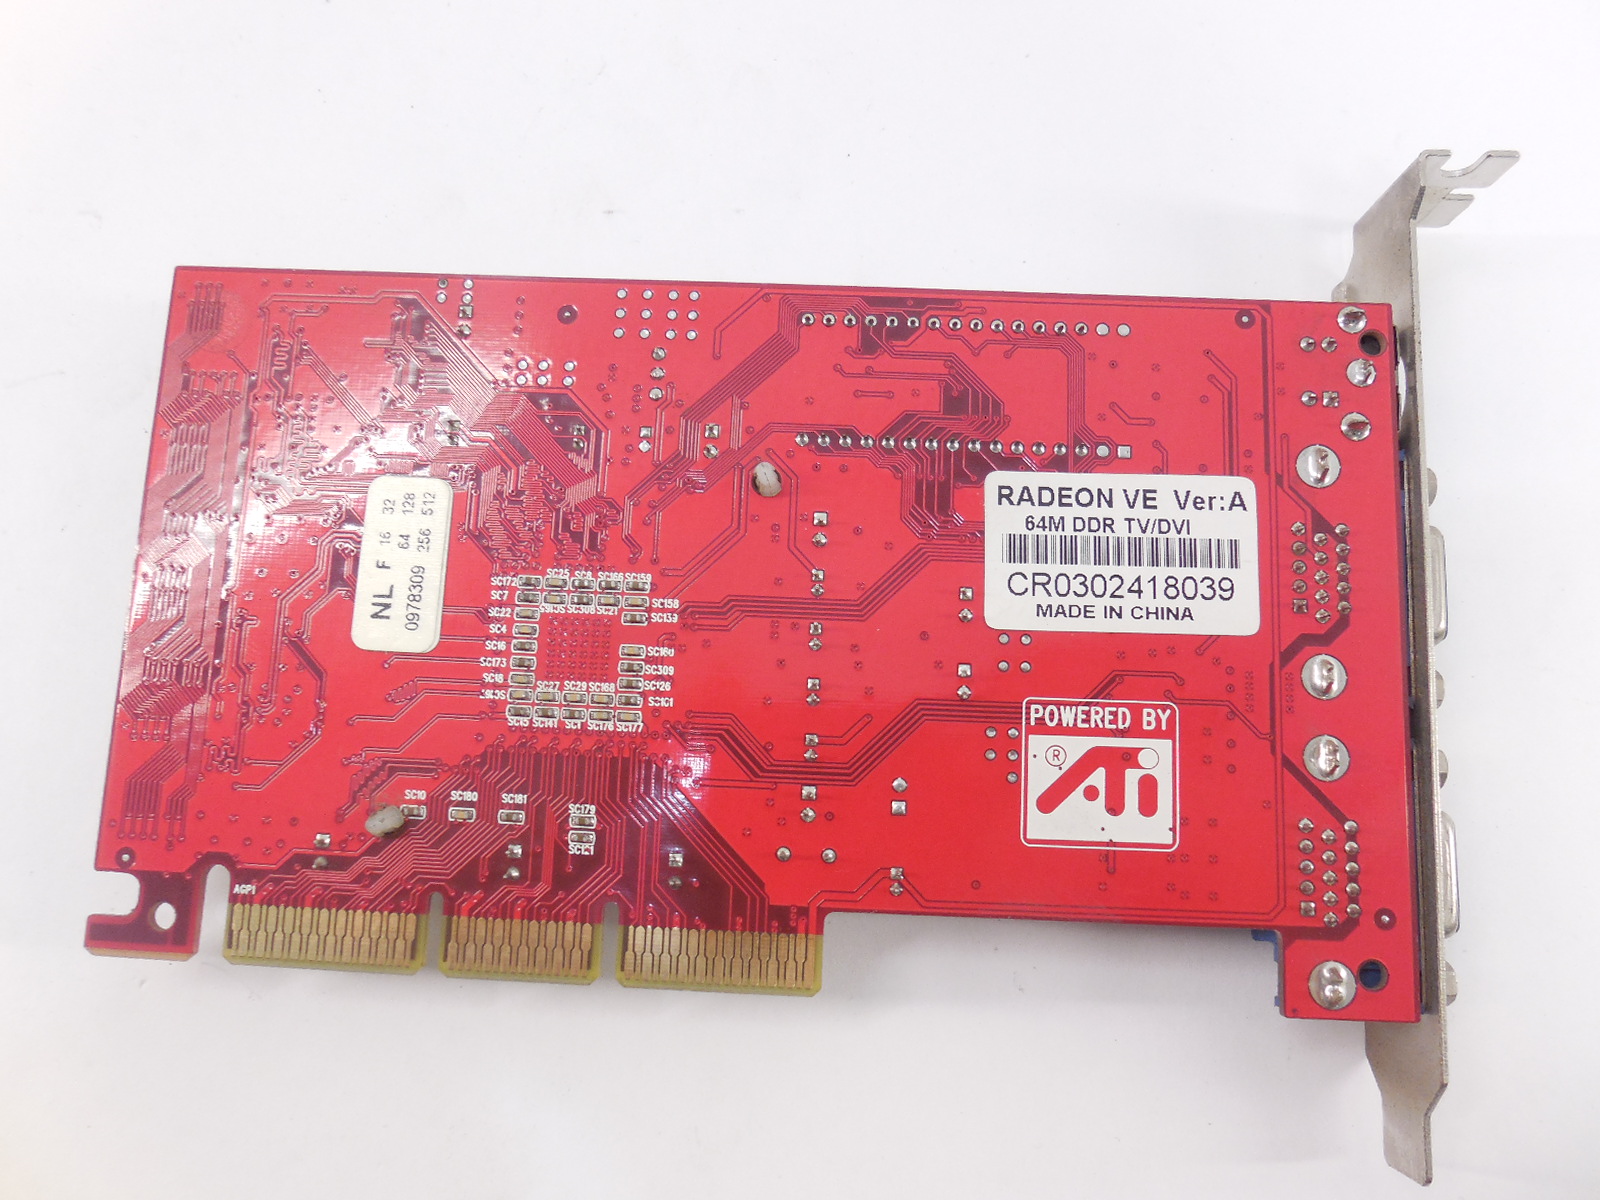 Radeon 7000 series. Видеокарта AGP-64mb. Видеокарта Radeon 7000 64mb PCI. Radeon ve 64m DDR DVI+vo. Видеокарта AGP VGA TV-out.